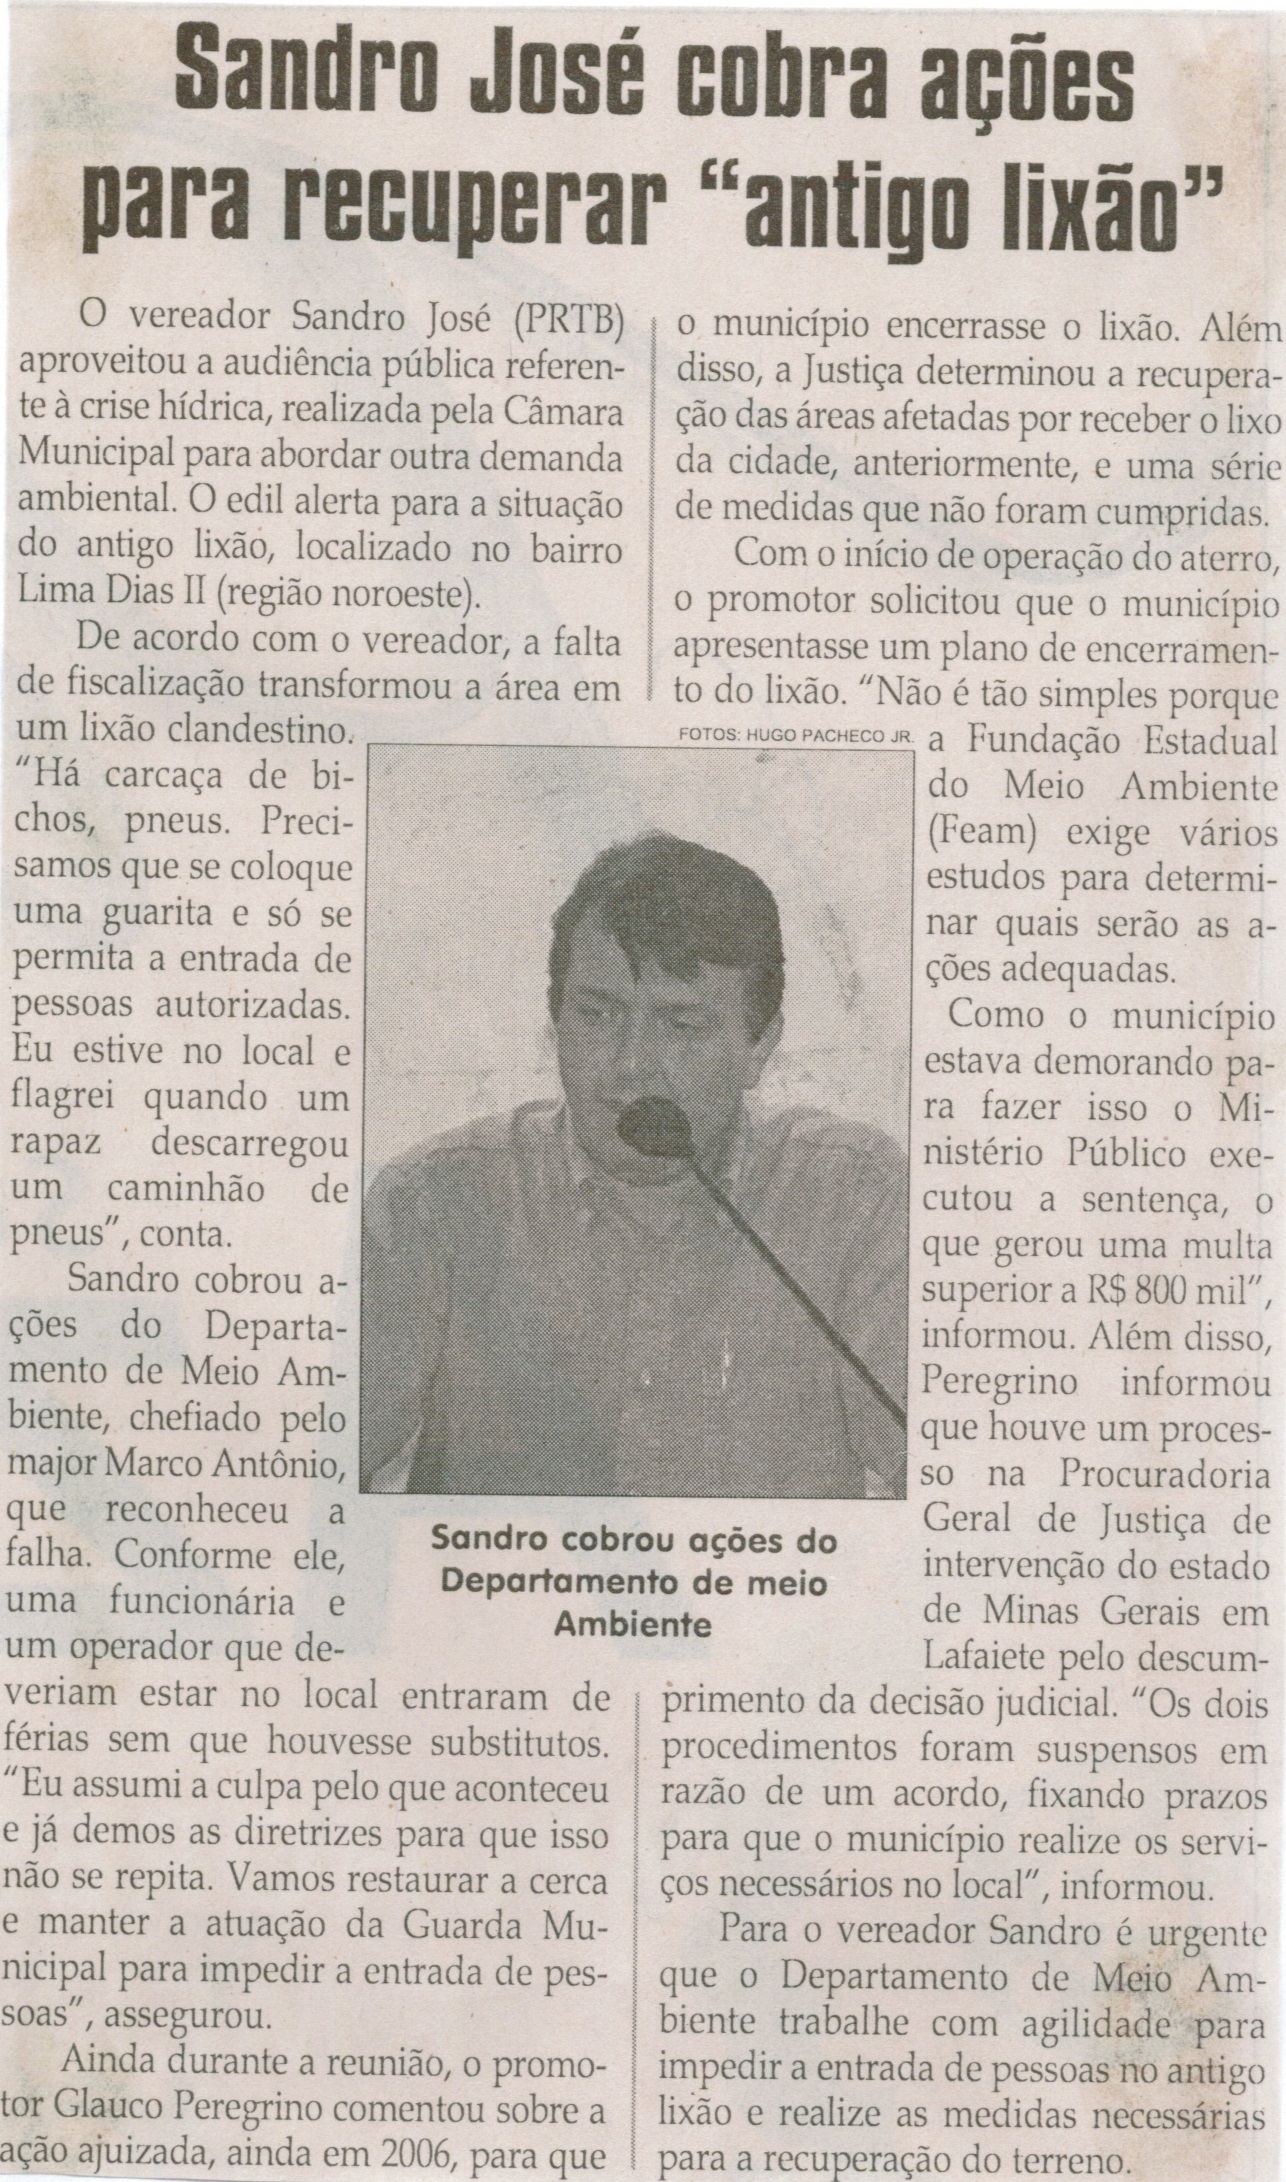 Sandro José cobra ações para recuperar "antigo lixão". Jornal Correio da Cidade, Conselheiro Lafaiete, 21 mar. 2015, 1257ª ed., p. 06.